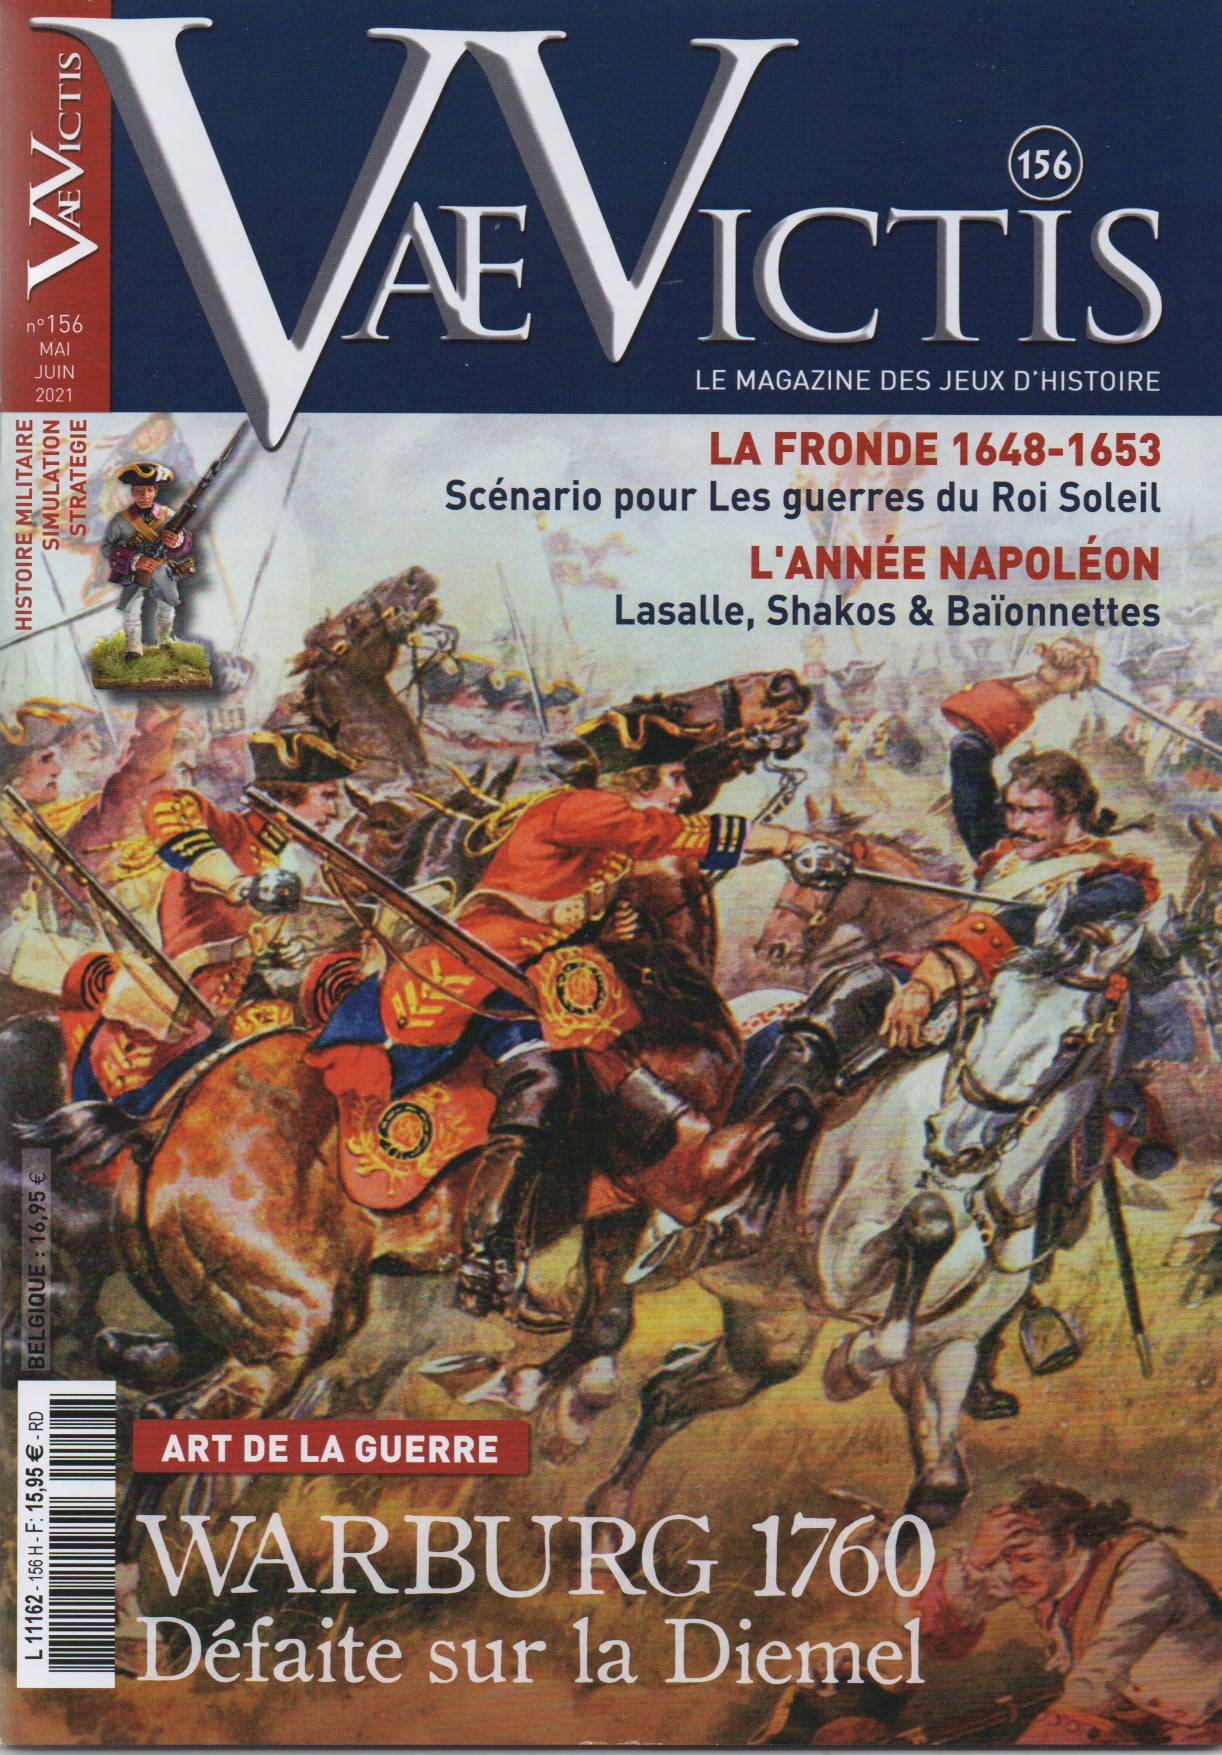 VaeVictis 156